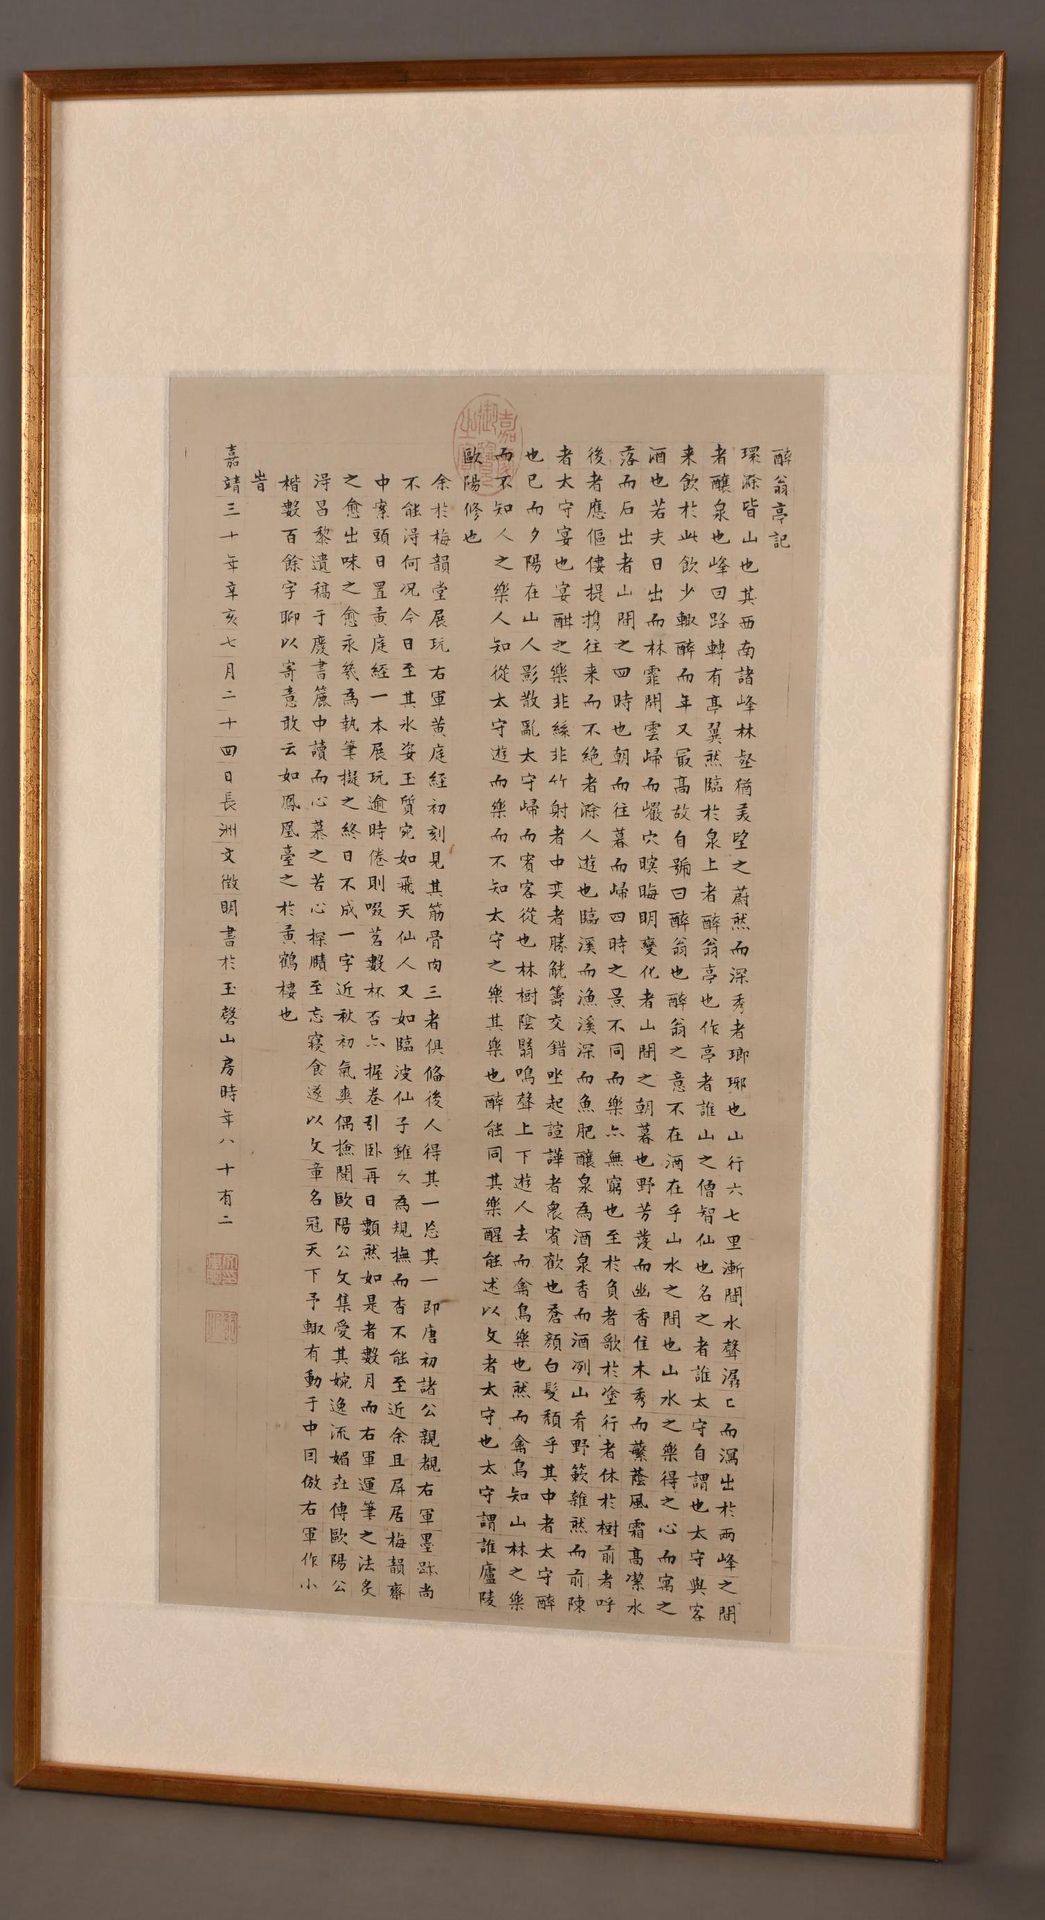 CHINE papier calligraphié 中国》，书法和封皮纸，有框架 纸张尺寸：53.50 x 28 cm